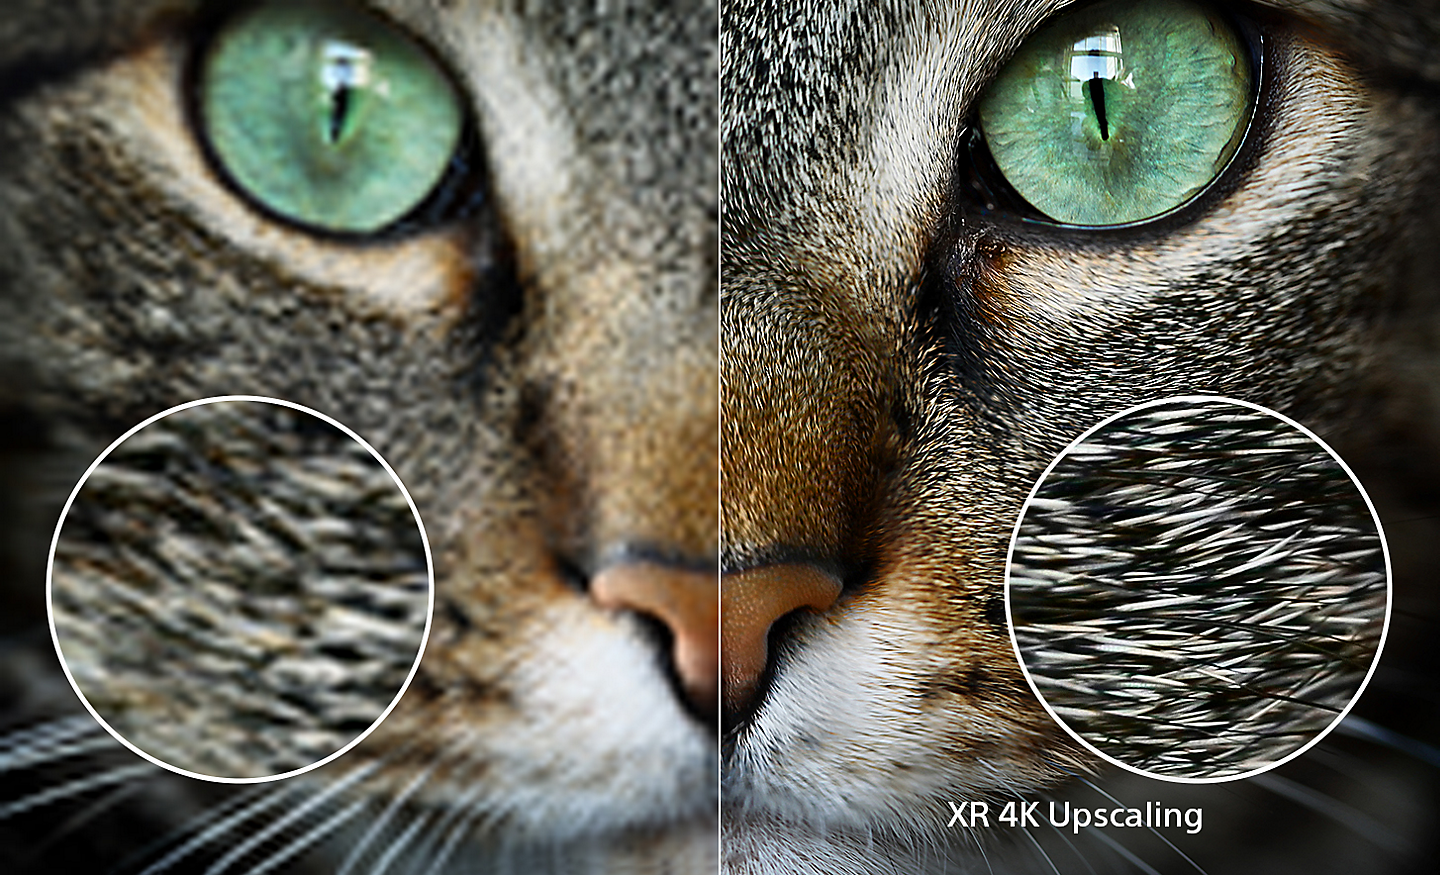 Разделен екран с котешка глава. Дясната страна показва допълнителни детайли след XR 4K Upscaling